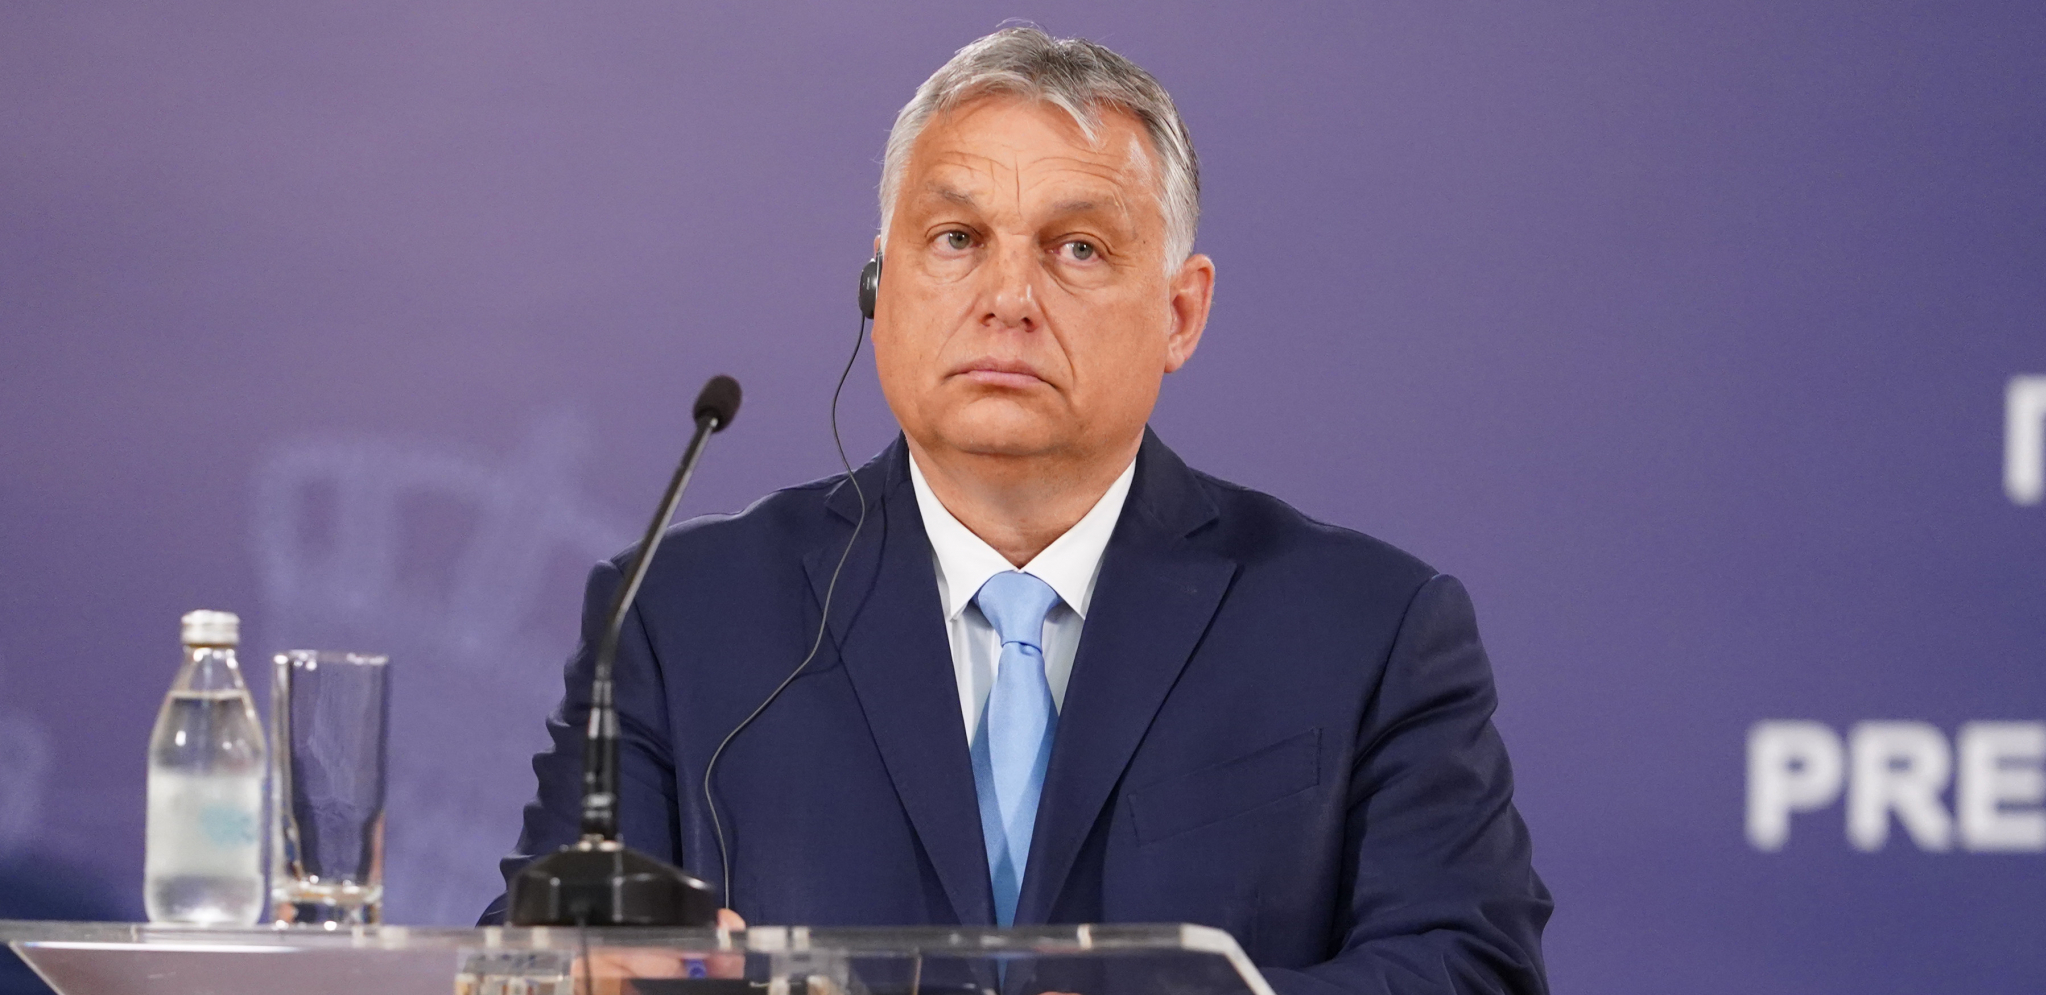 ORBAN ODUVAO CEO BRISEL! Mađarski premijer objasnio nove podele u Evropskoj uniji!